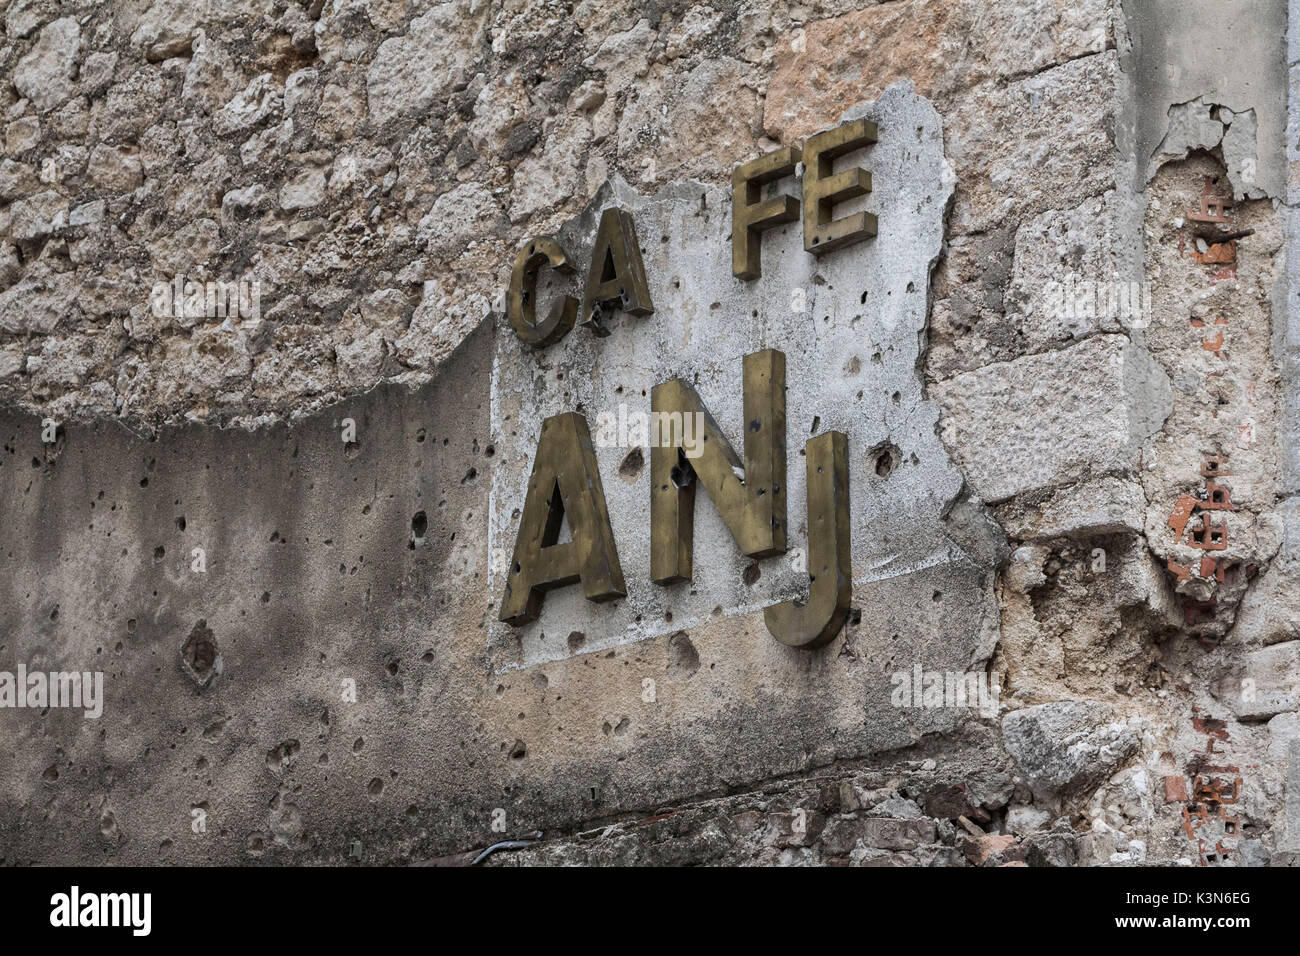 Europa orientale, Mostar, in Bosnia ed Erzegovina. I segni della guerra nei Balcani sui muri della città. Foto Stock